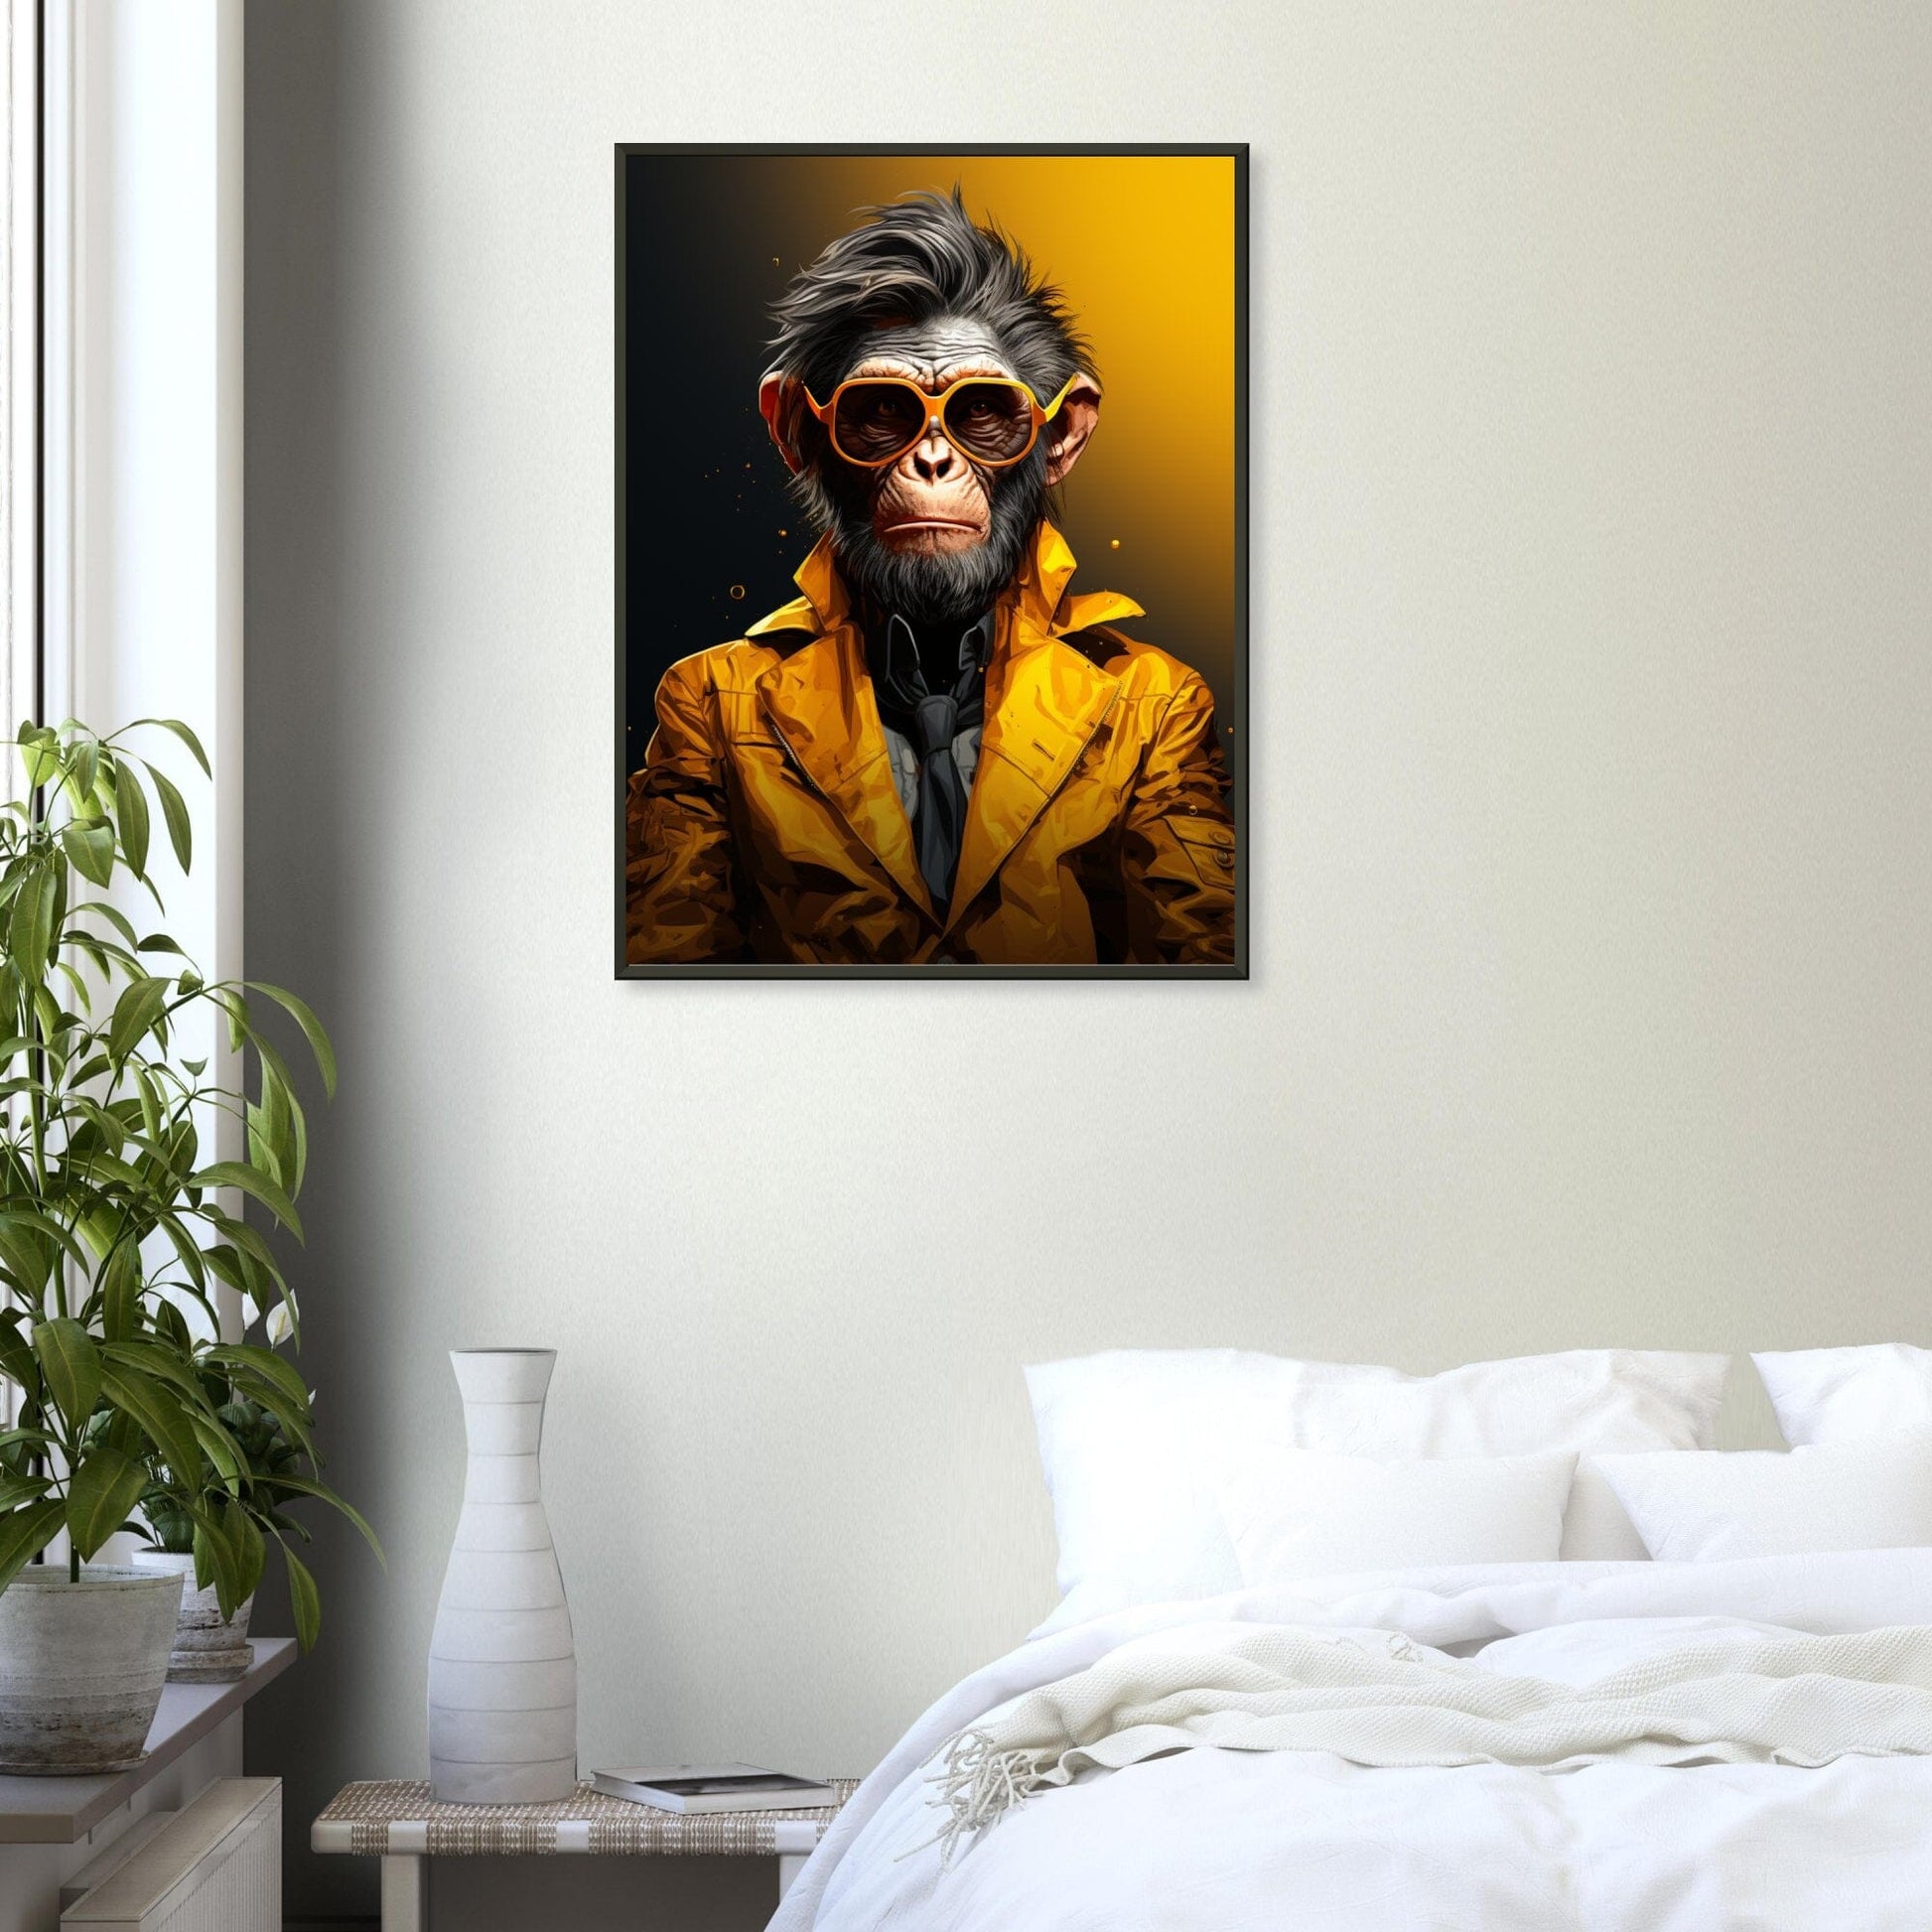 Affeneleganz ein Bild aus der collections Tierbilder als Poster im Wohnzimmer